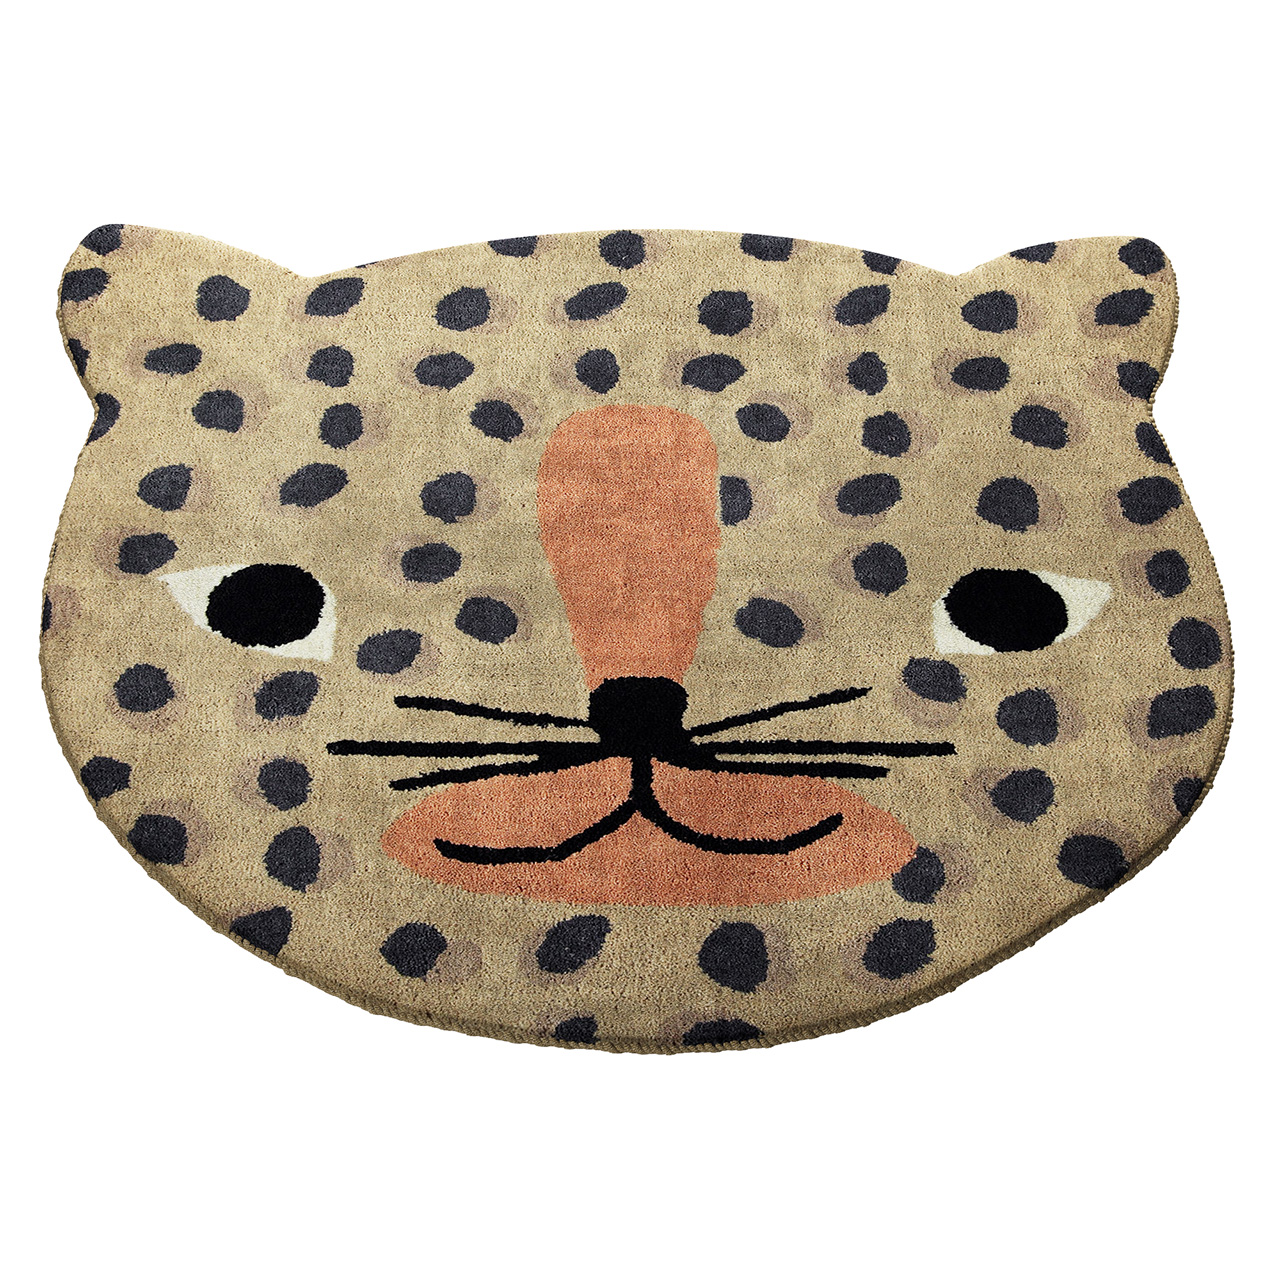 leopard-rug-by-oyoy.jpg